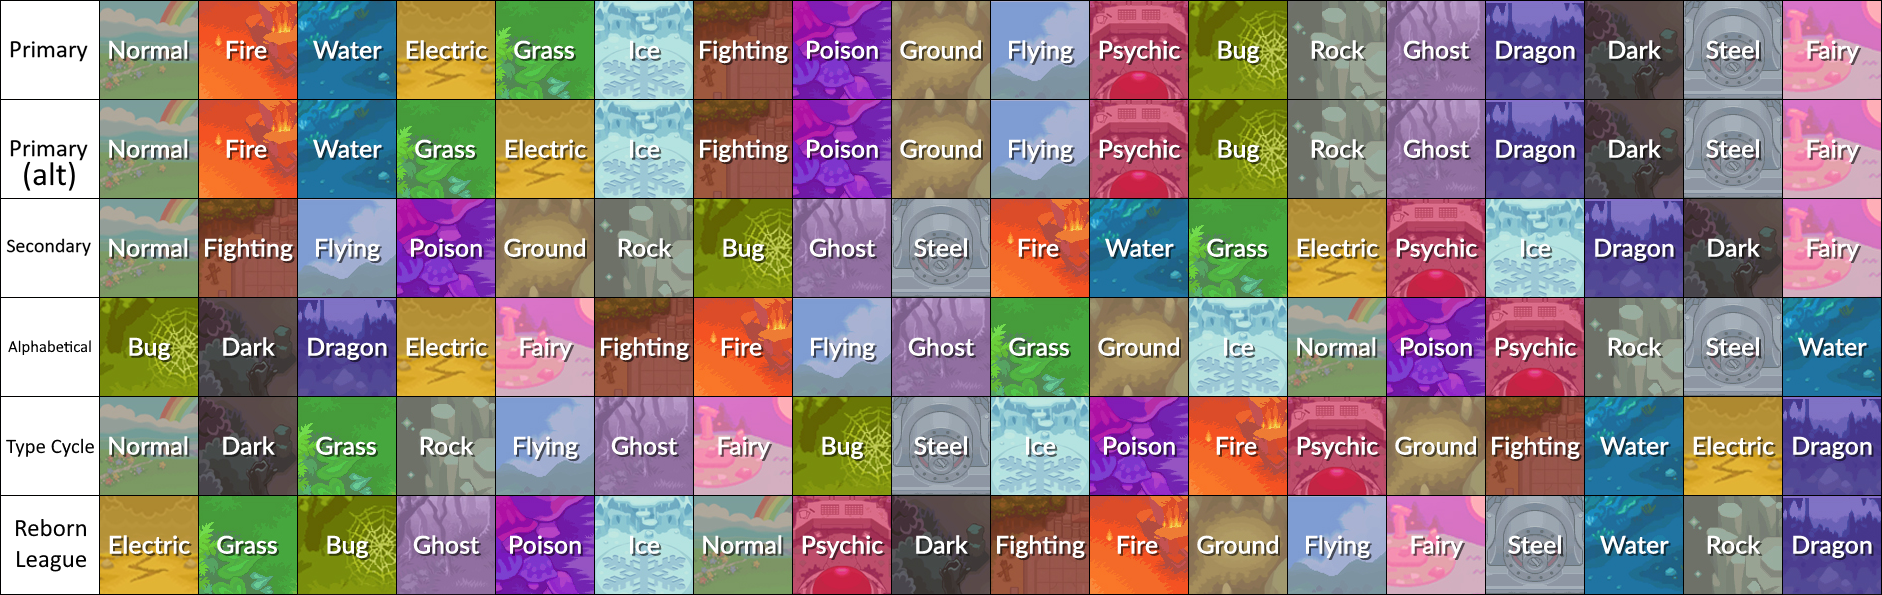 Pokemon Type Weakness Chart by LaucianTG on DeviantArt